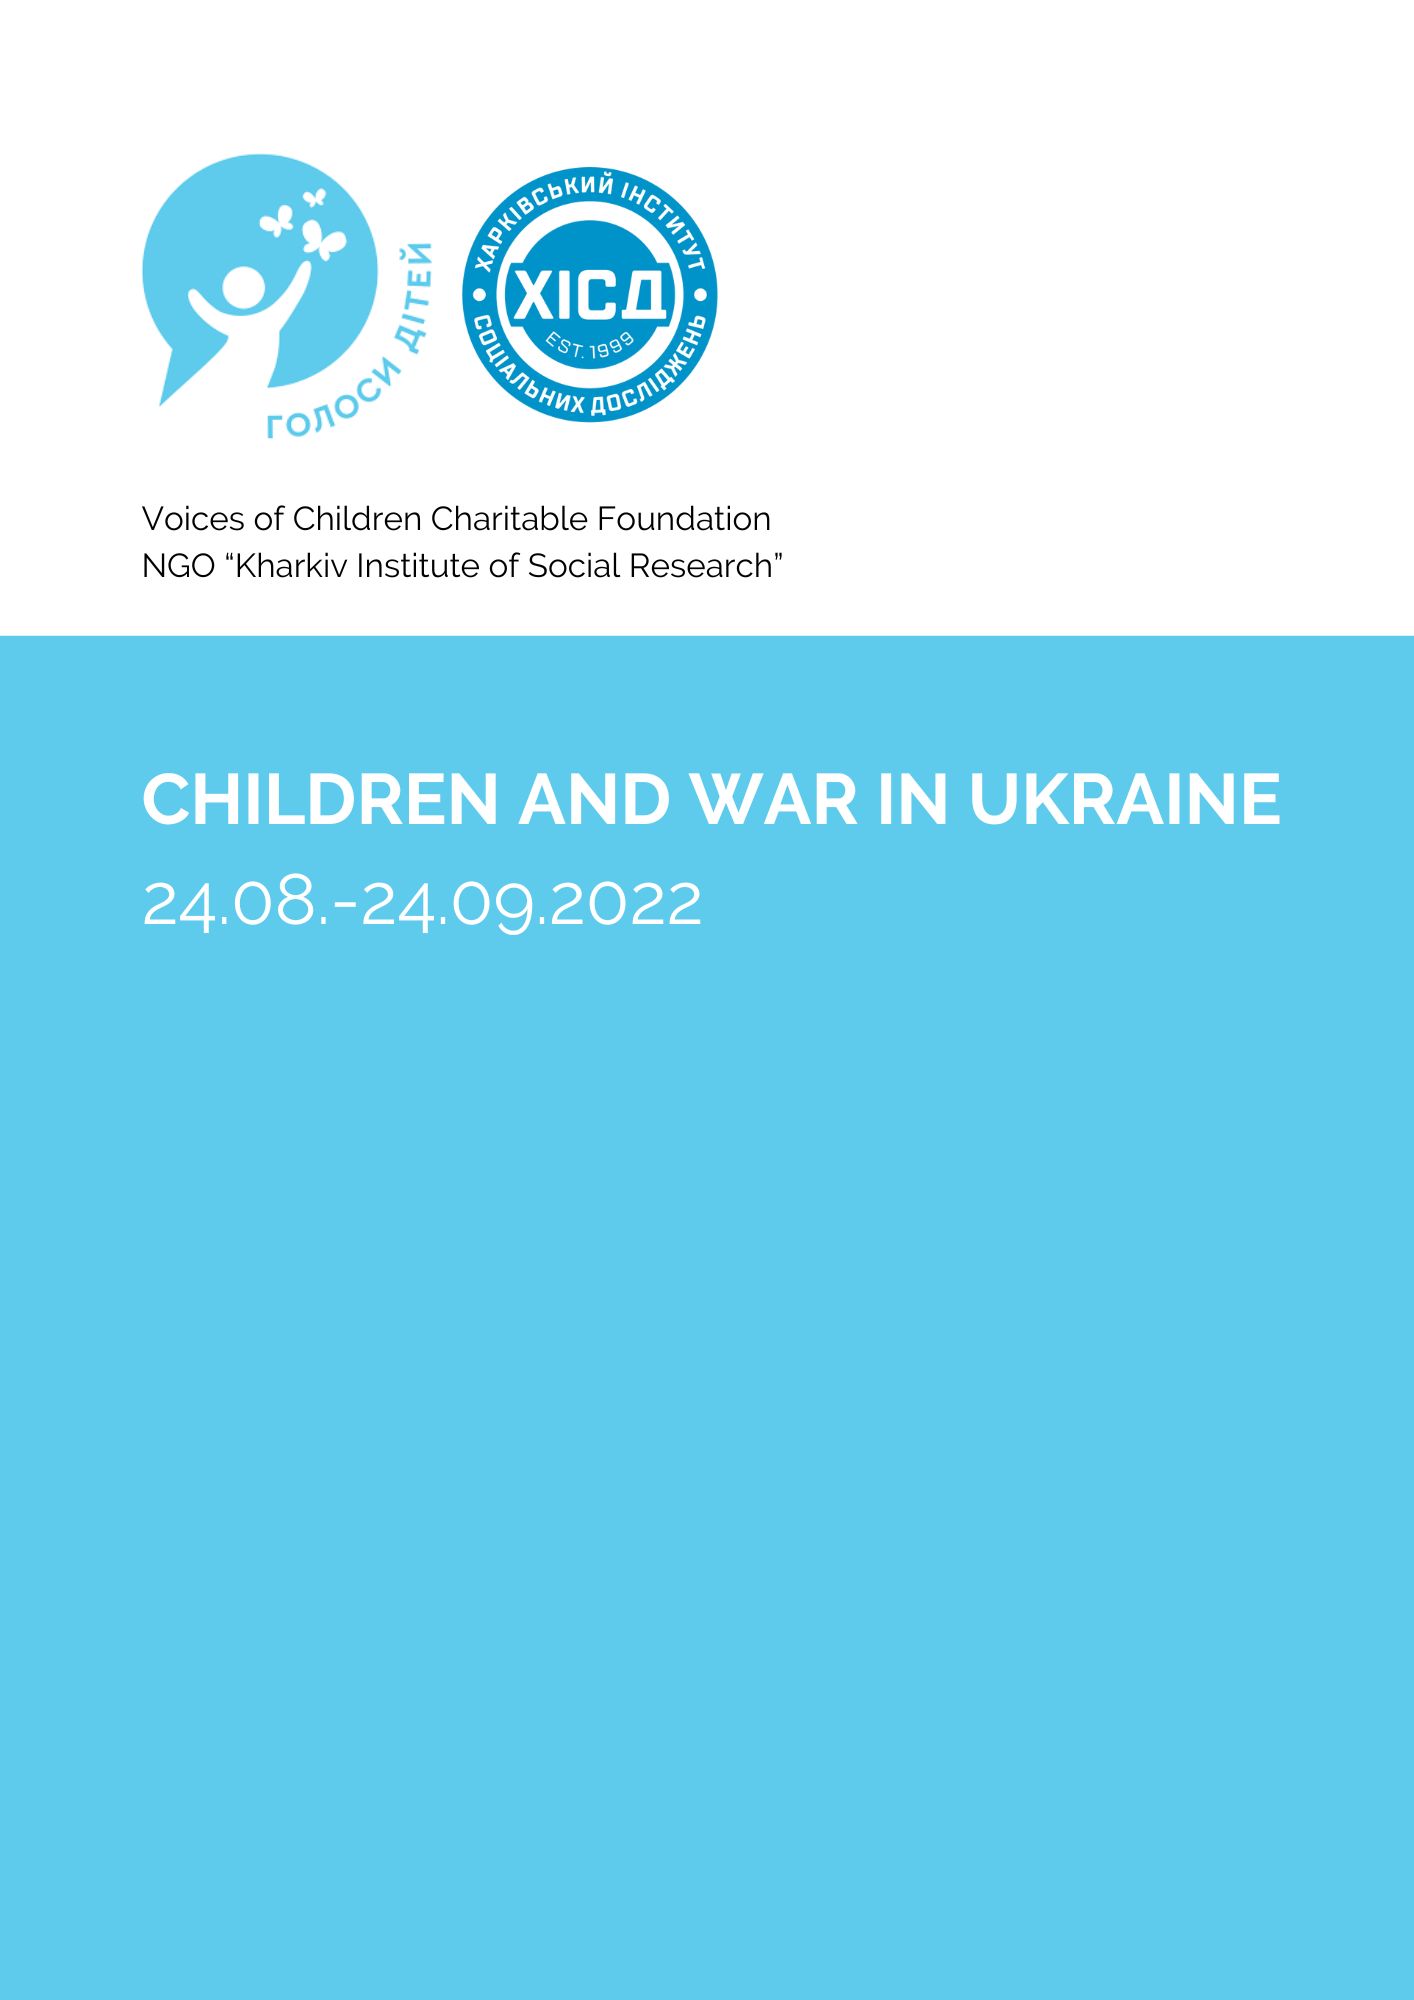 Children and the war in Ukraine 24.08.-24.09.2022